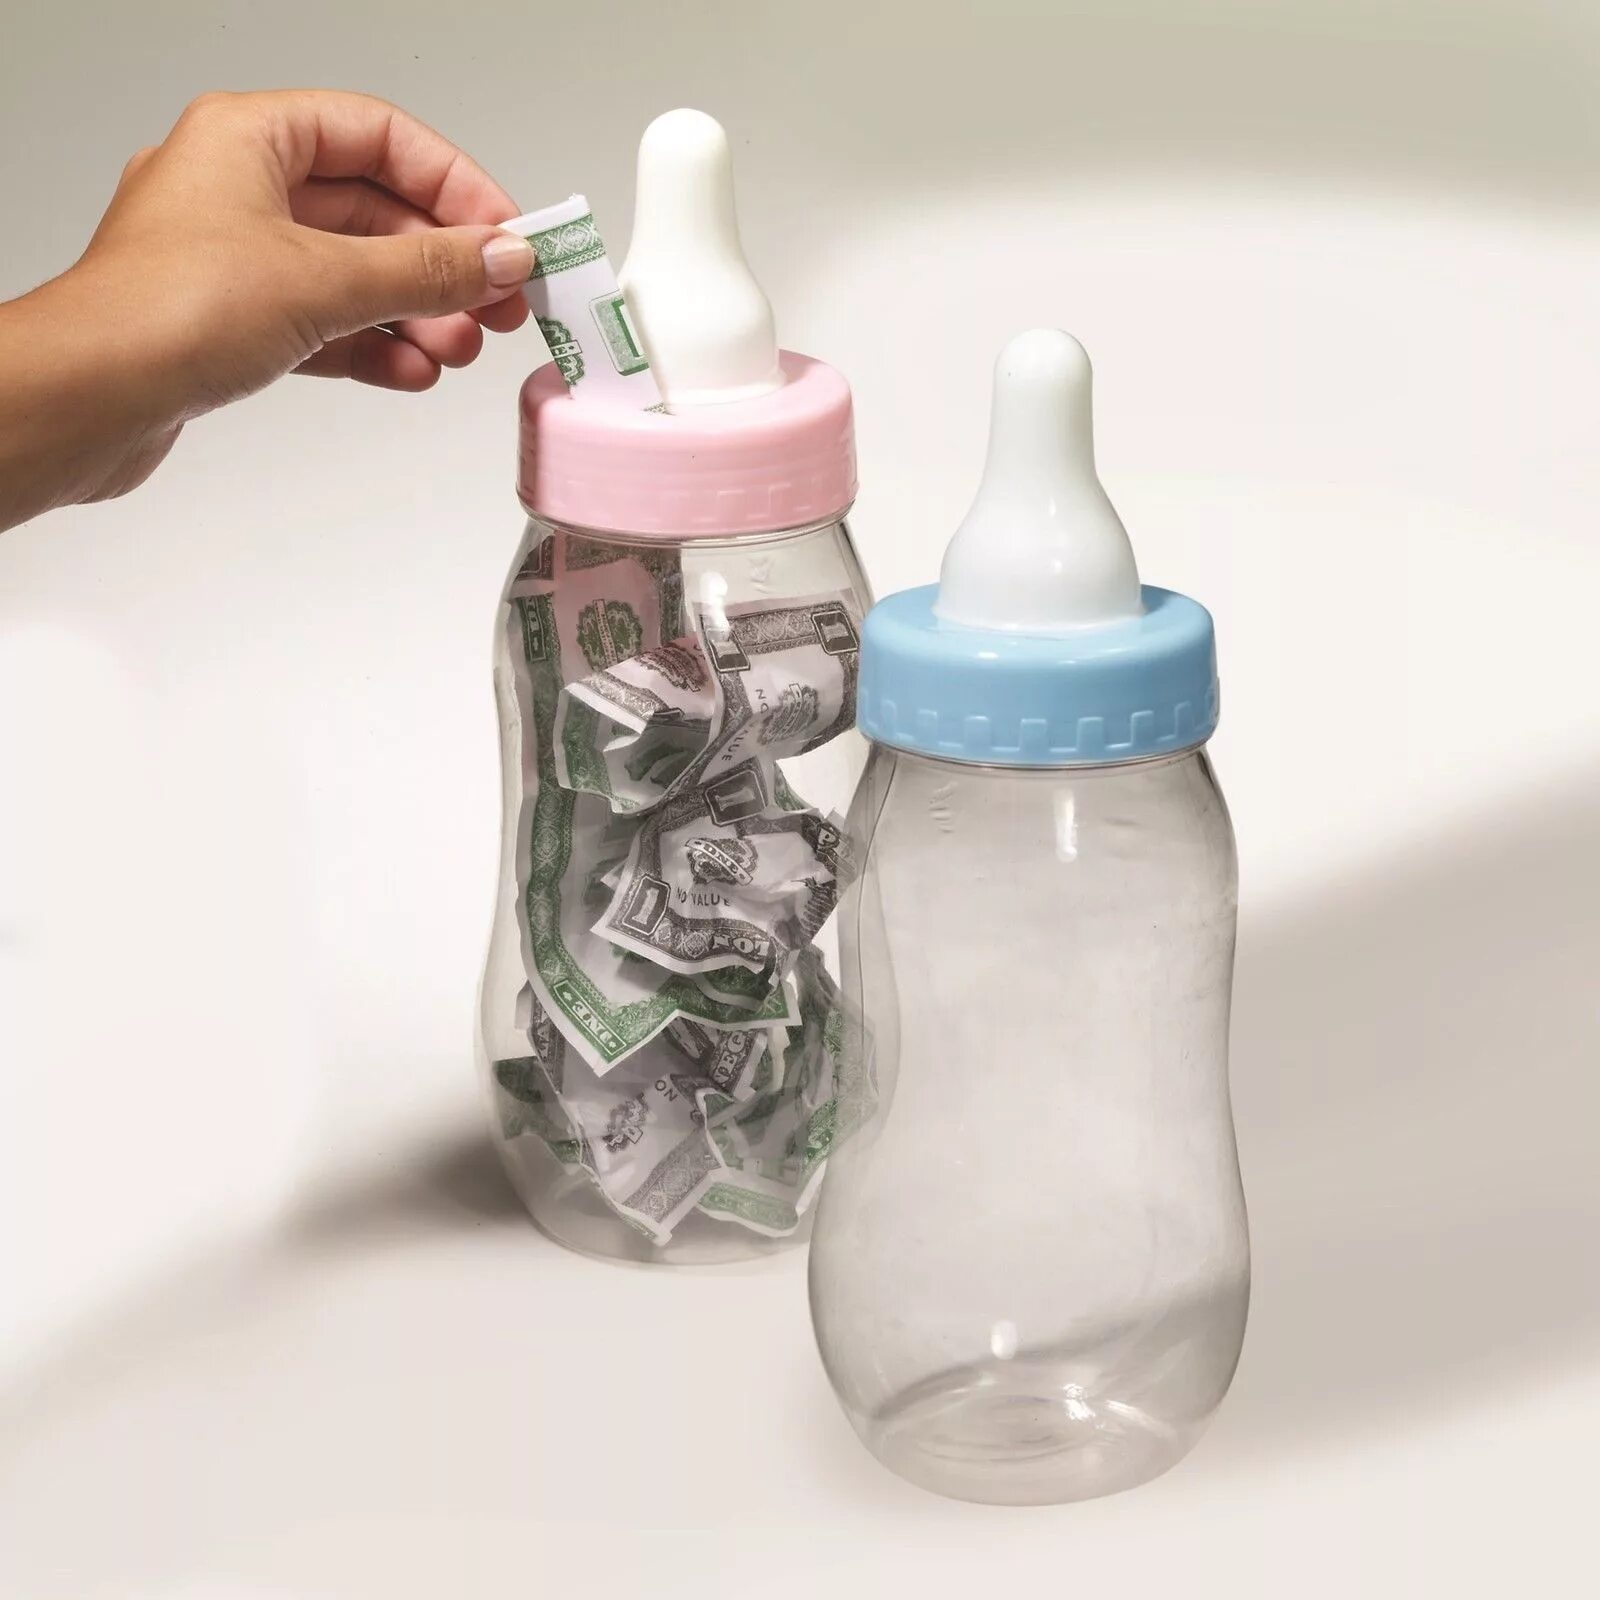 Бутылочка сын. Бутылка для детей. Малыш с бутылочкой. Игрушечная бутылочка для ребенка. Маленькие бутылочки для детей.